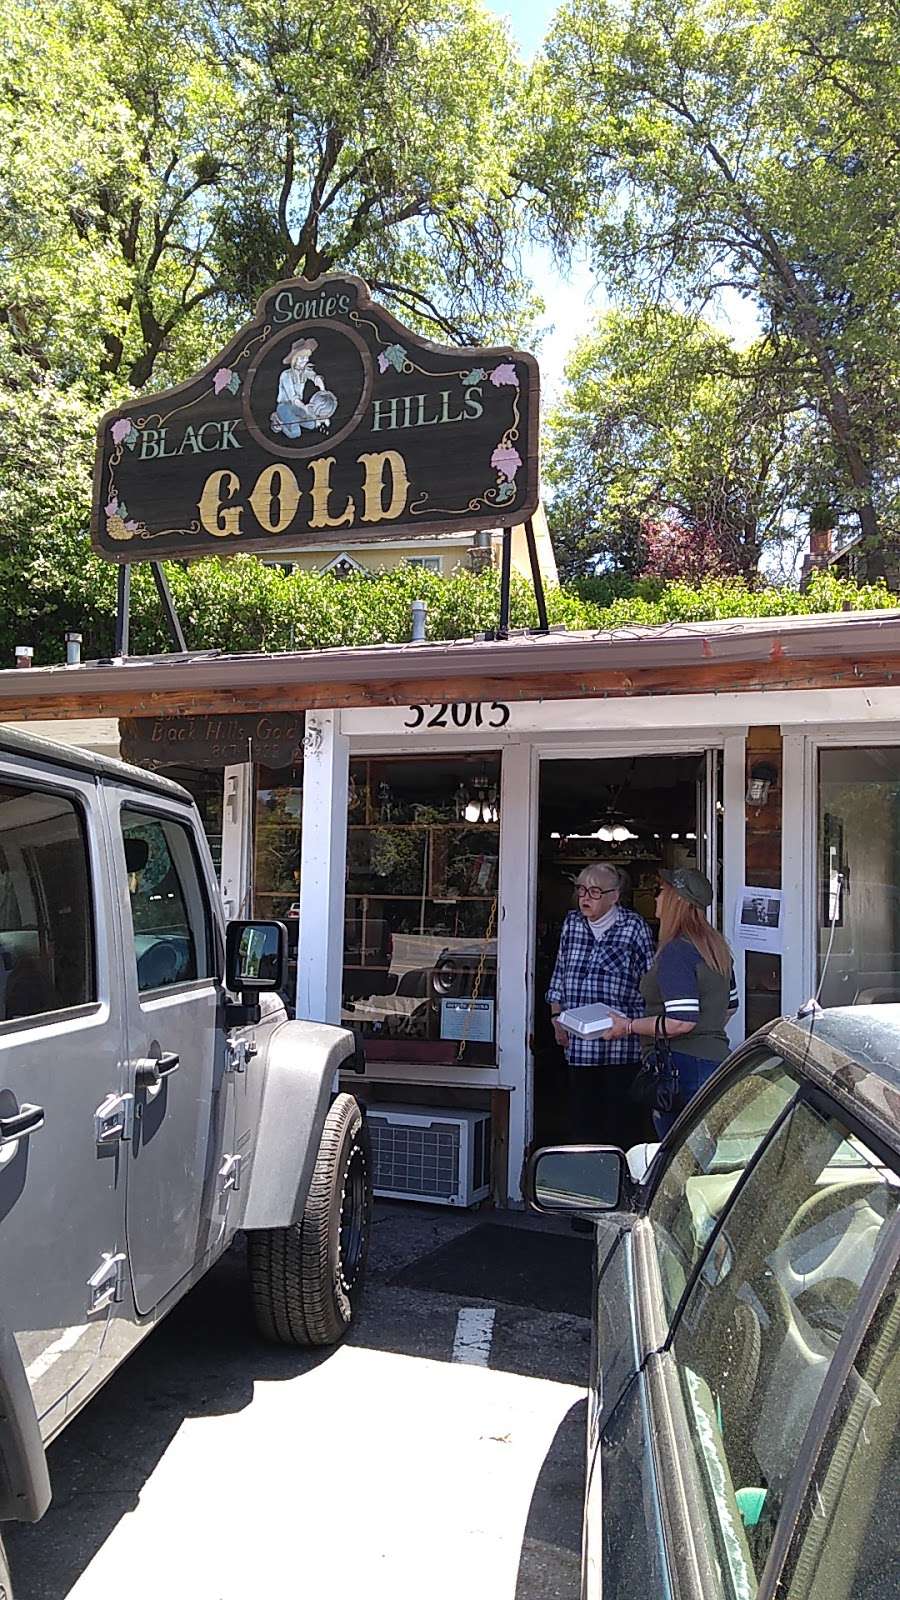 Sonies Black Hills Gold | 32015 Hilltop Blvd, Running Springs, CA 92382, USA